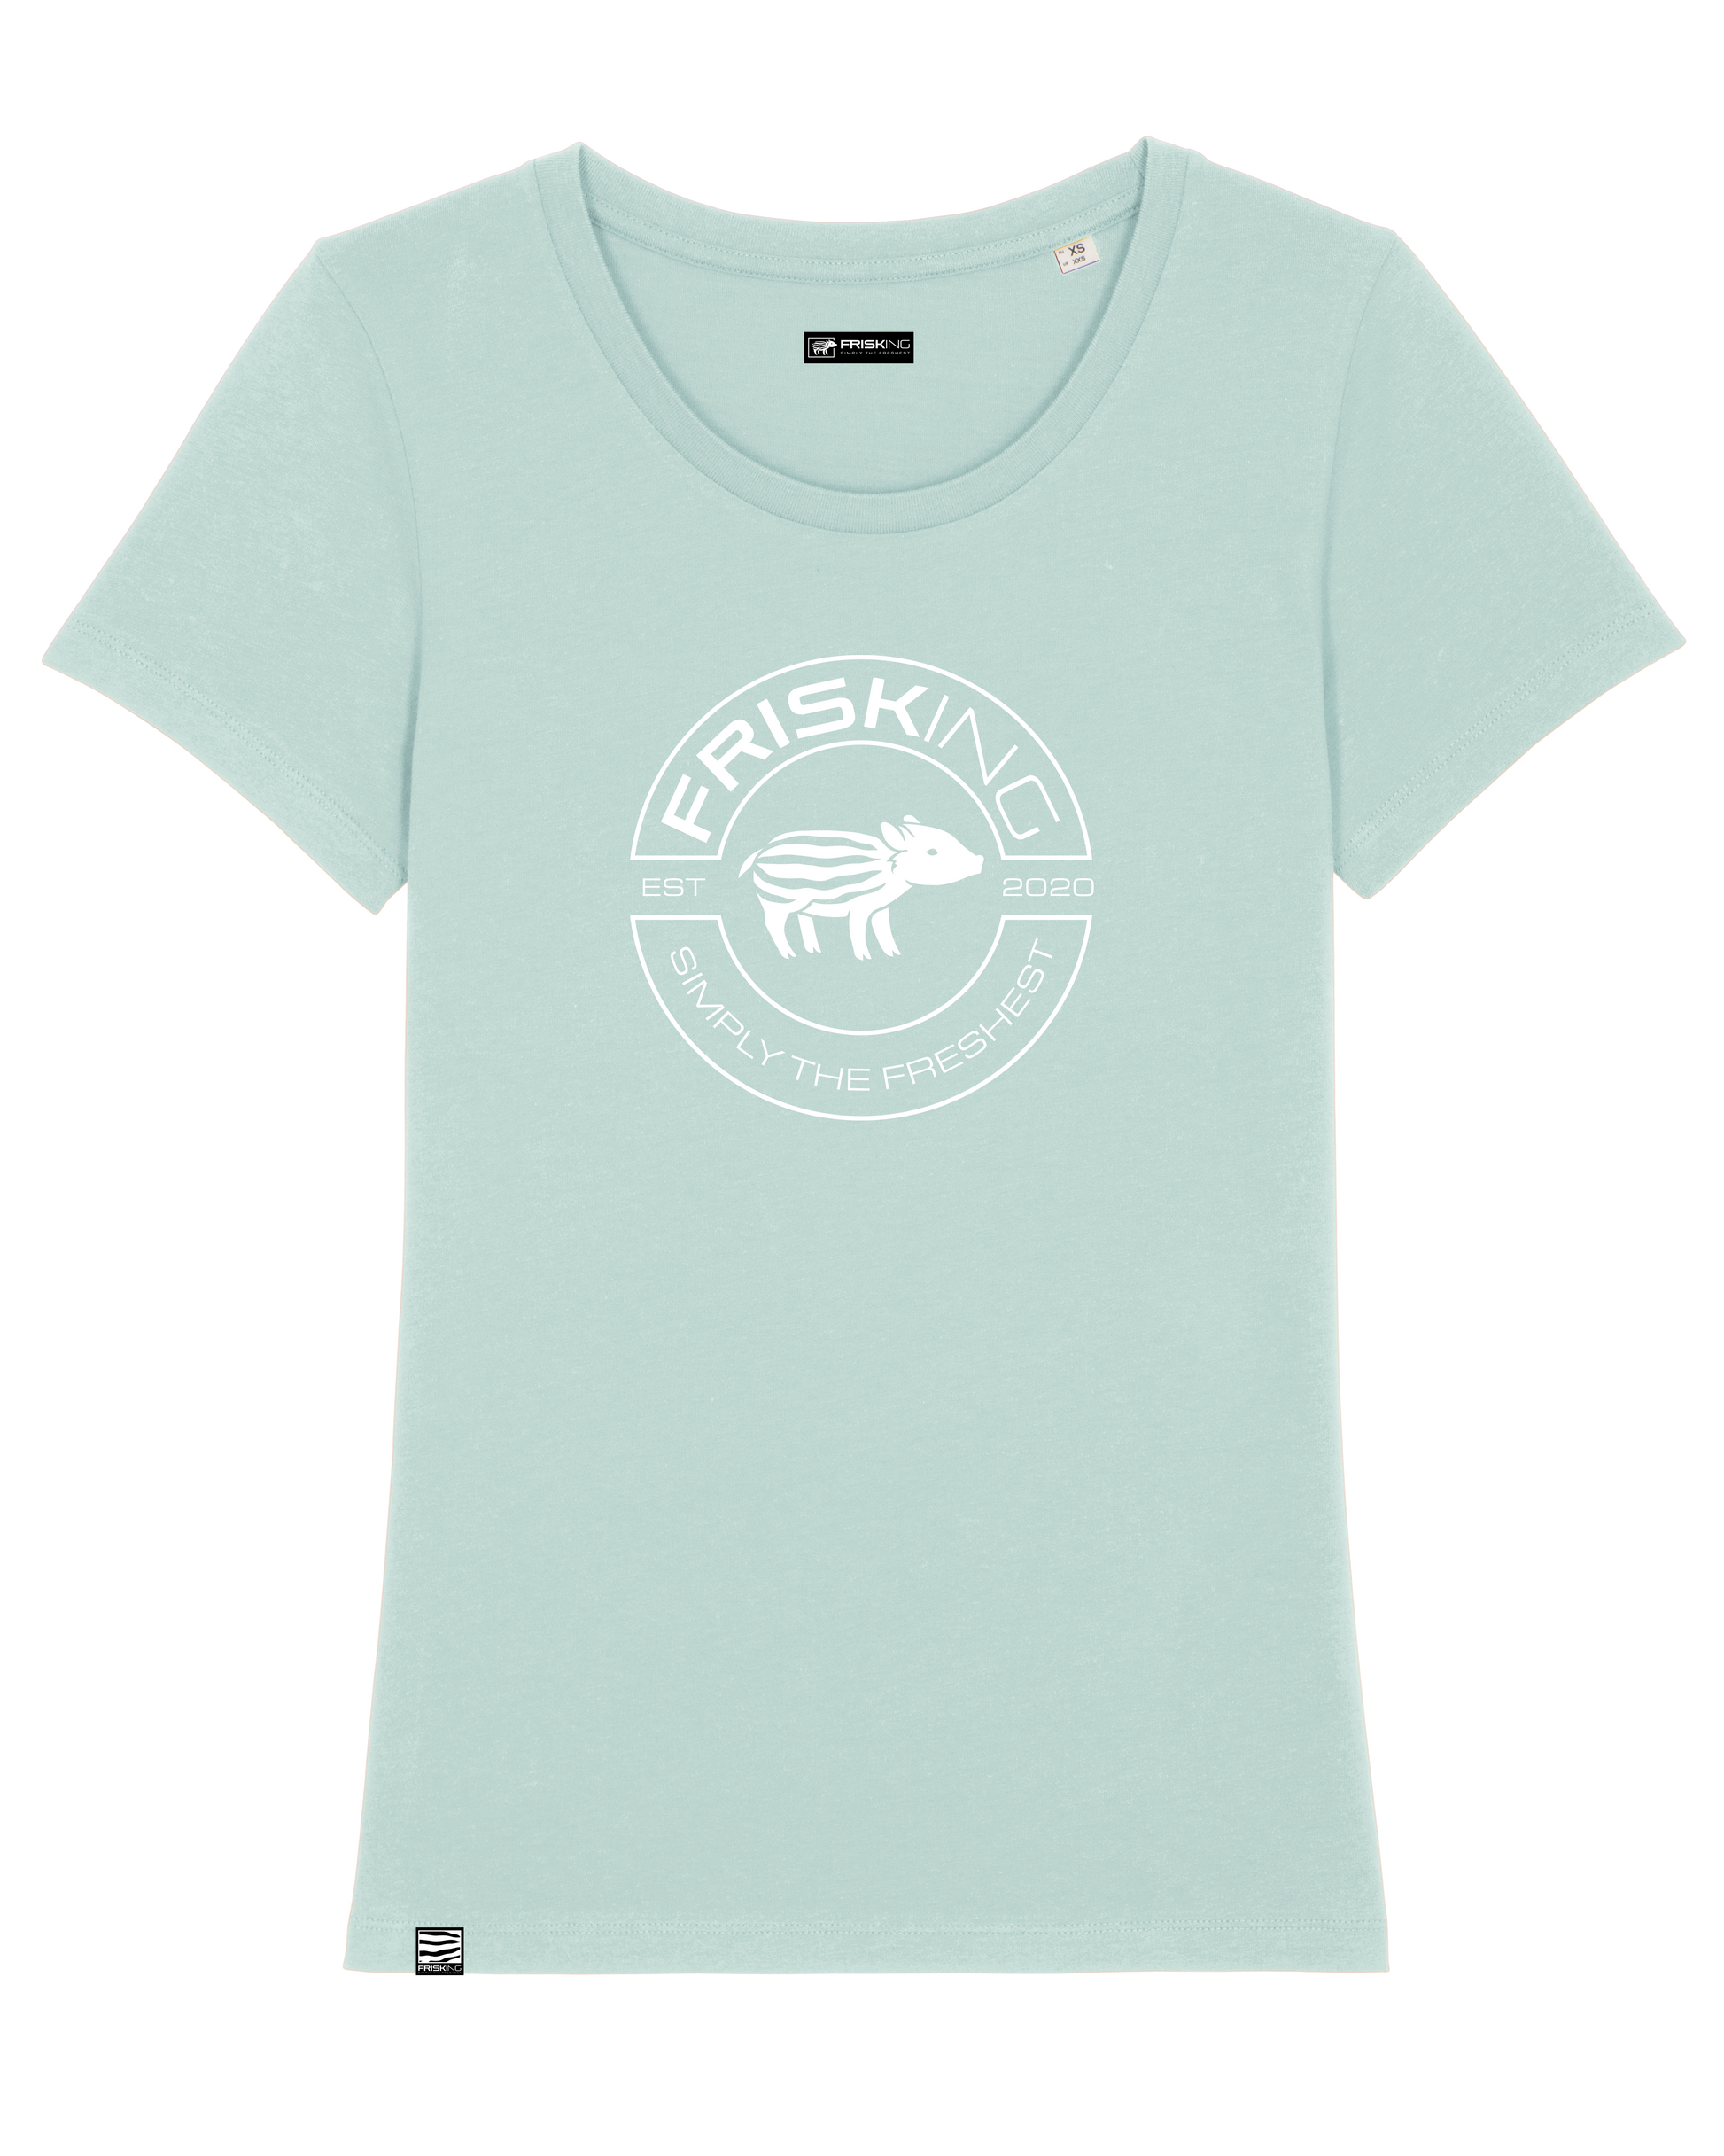 FRISKING Women T-Shirt "no frisk, no fun!", Shirt, T Shirt, simply the freshest